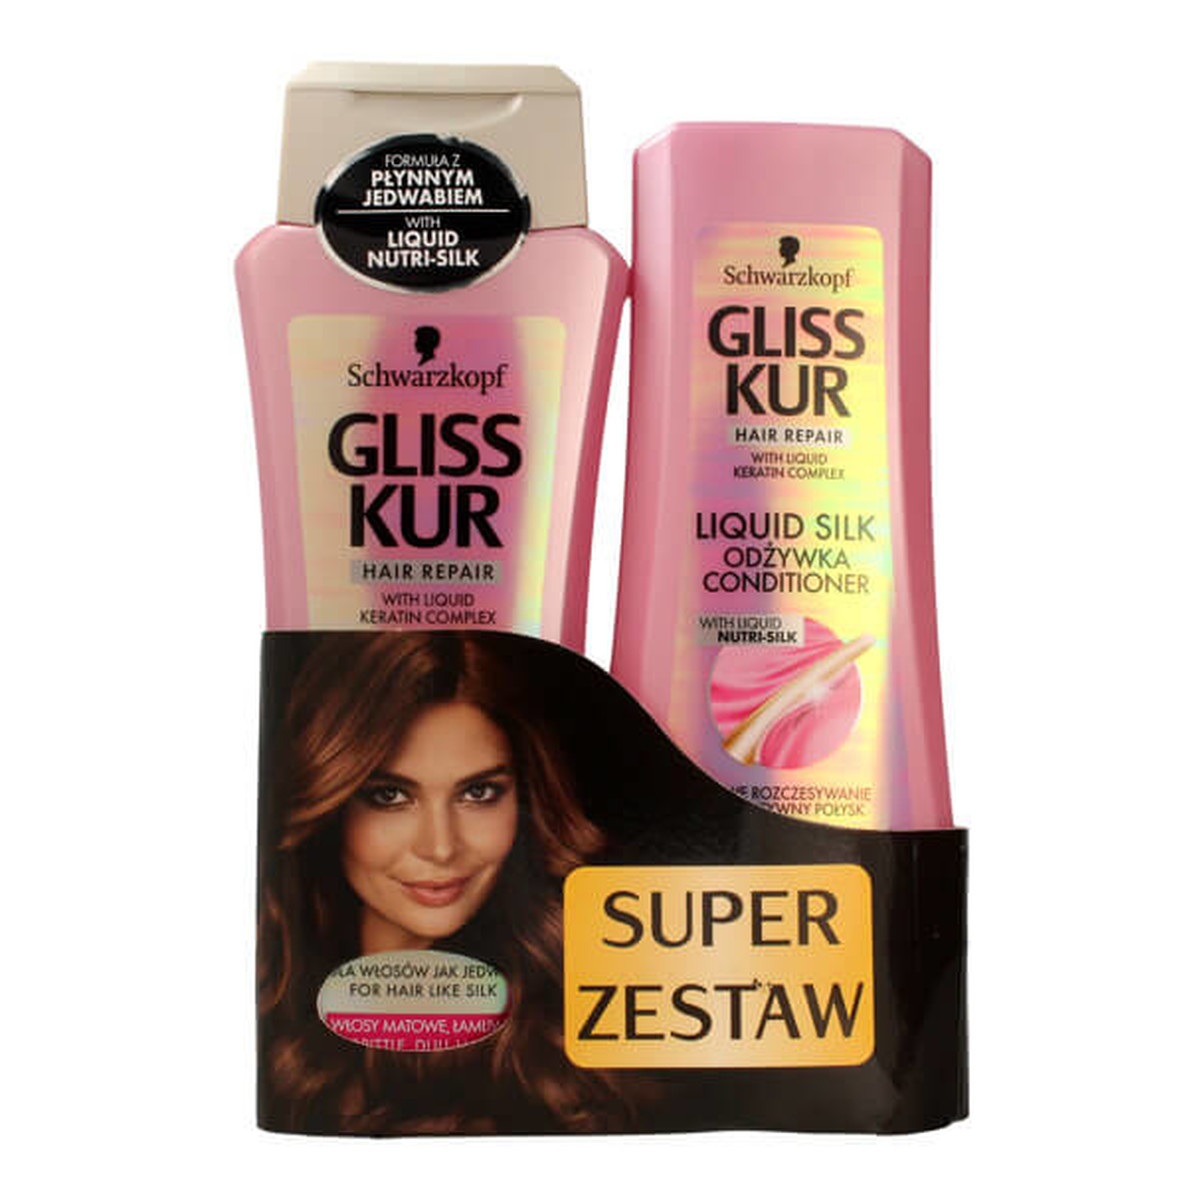 Gliss Ultimate Liquid Sil zestaw do włosów matowych łamliwych (szampon 250ml + odżywka 200ml)